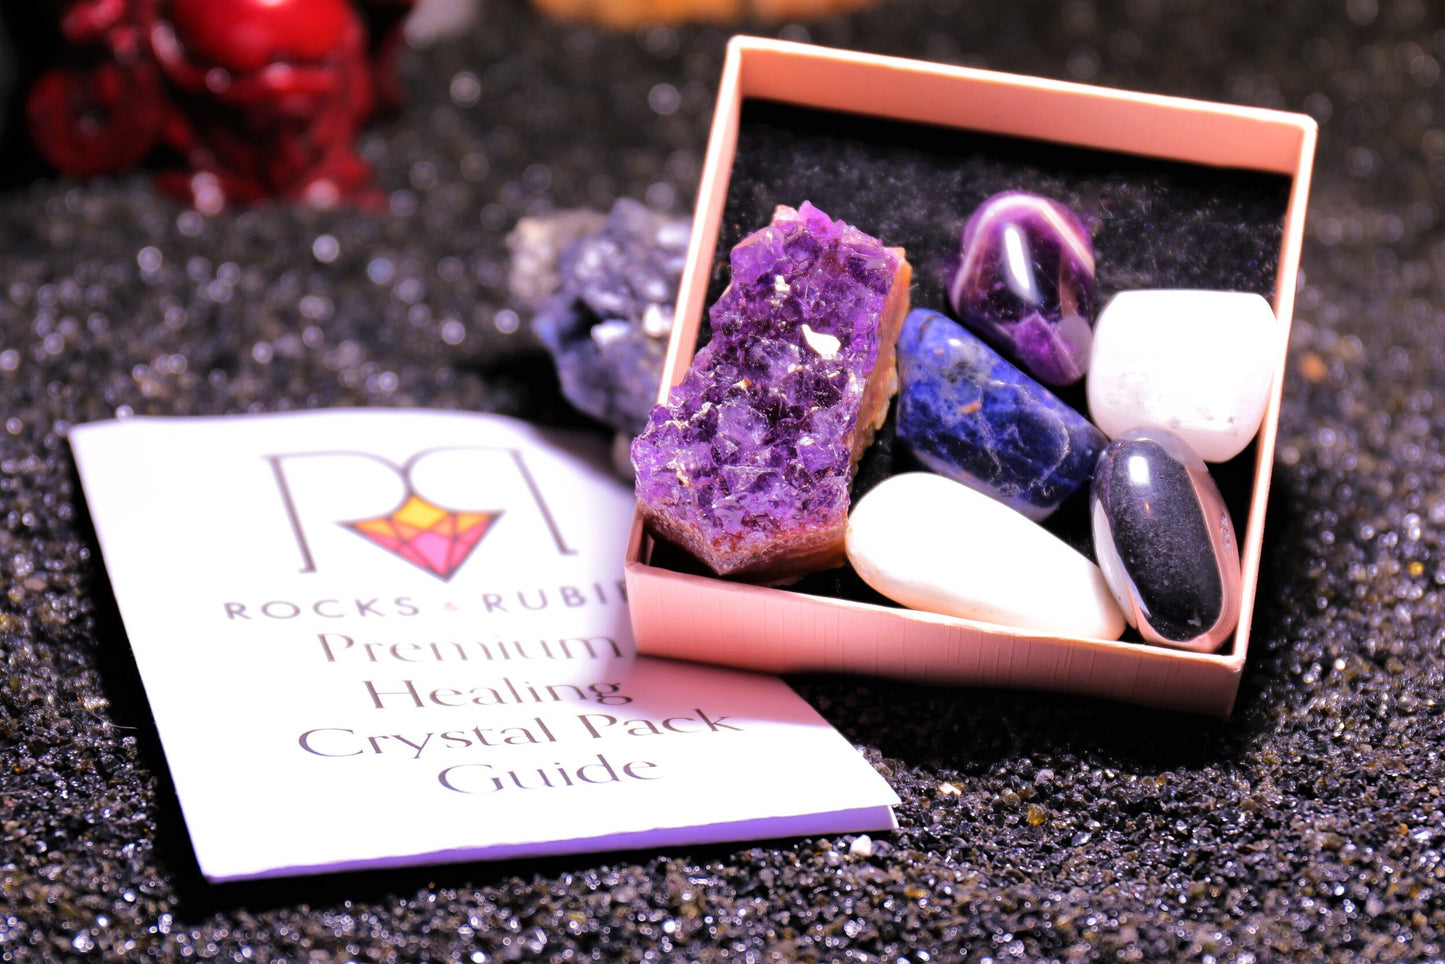 Peaceful Sleep Premium Healing Crystal Pack